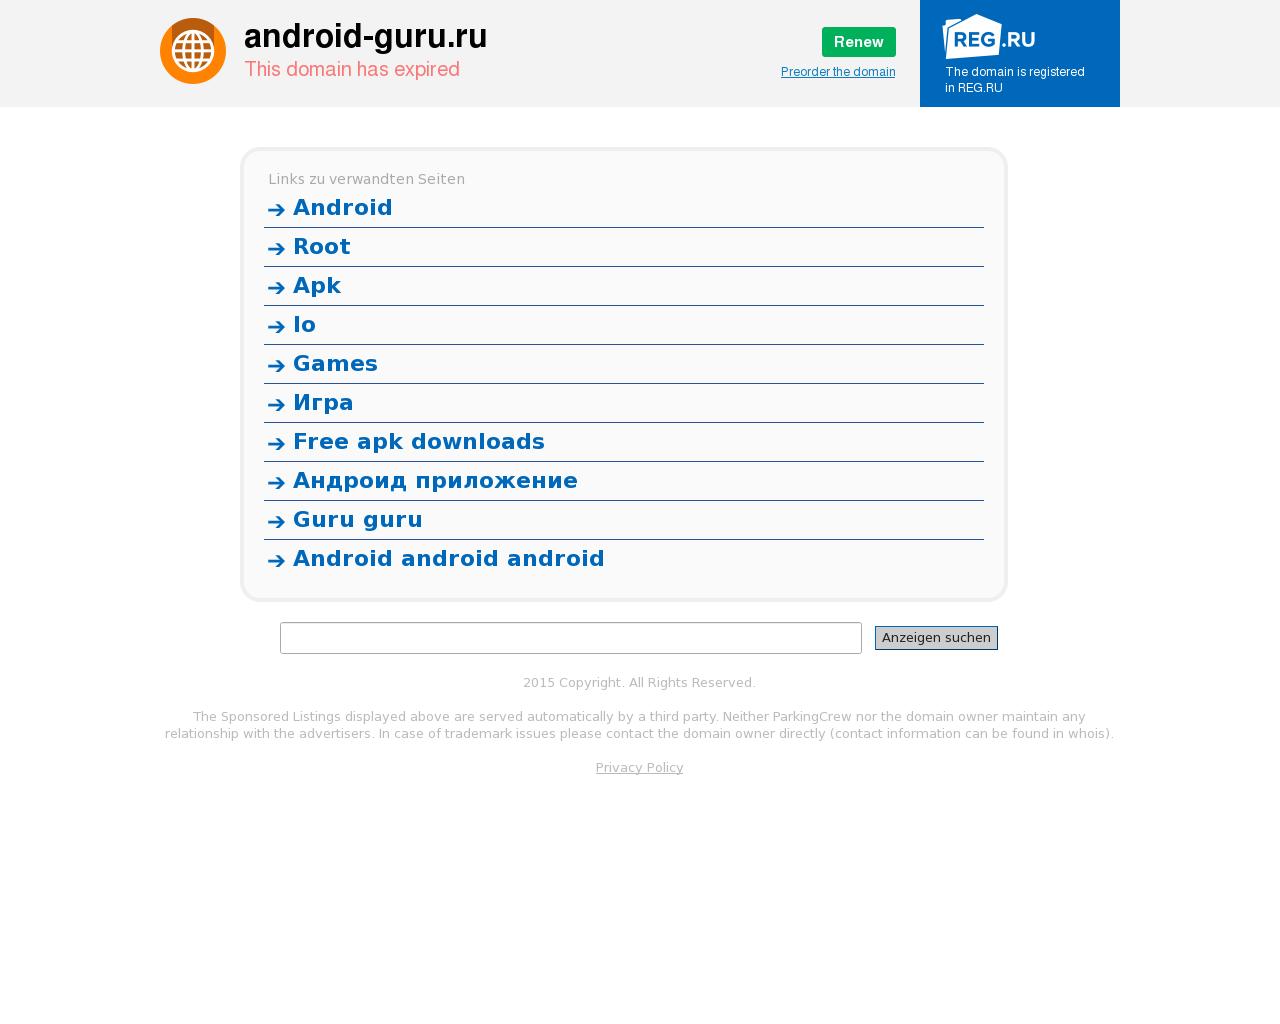 Изображение сайта android-guru.ru в разрешении 1280x1024